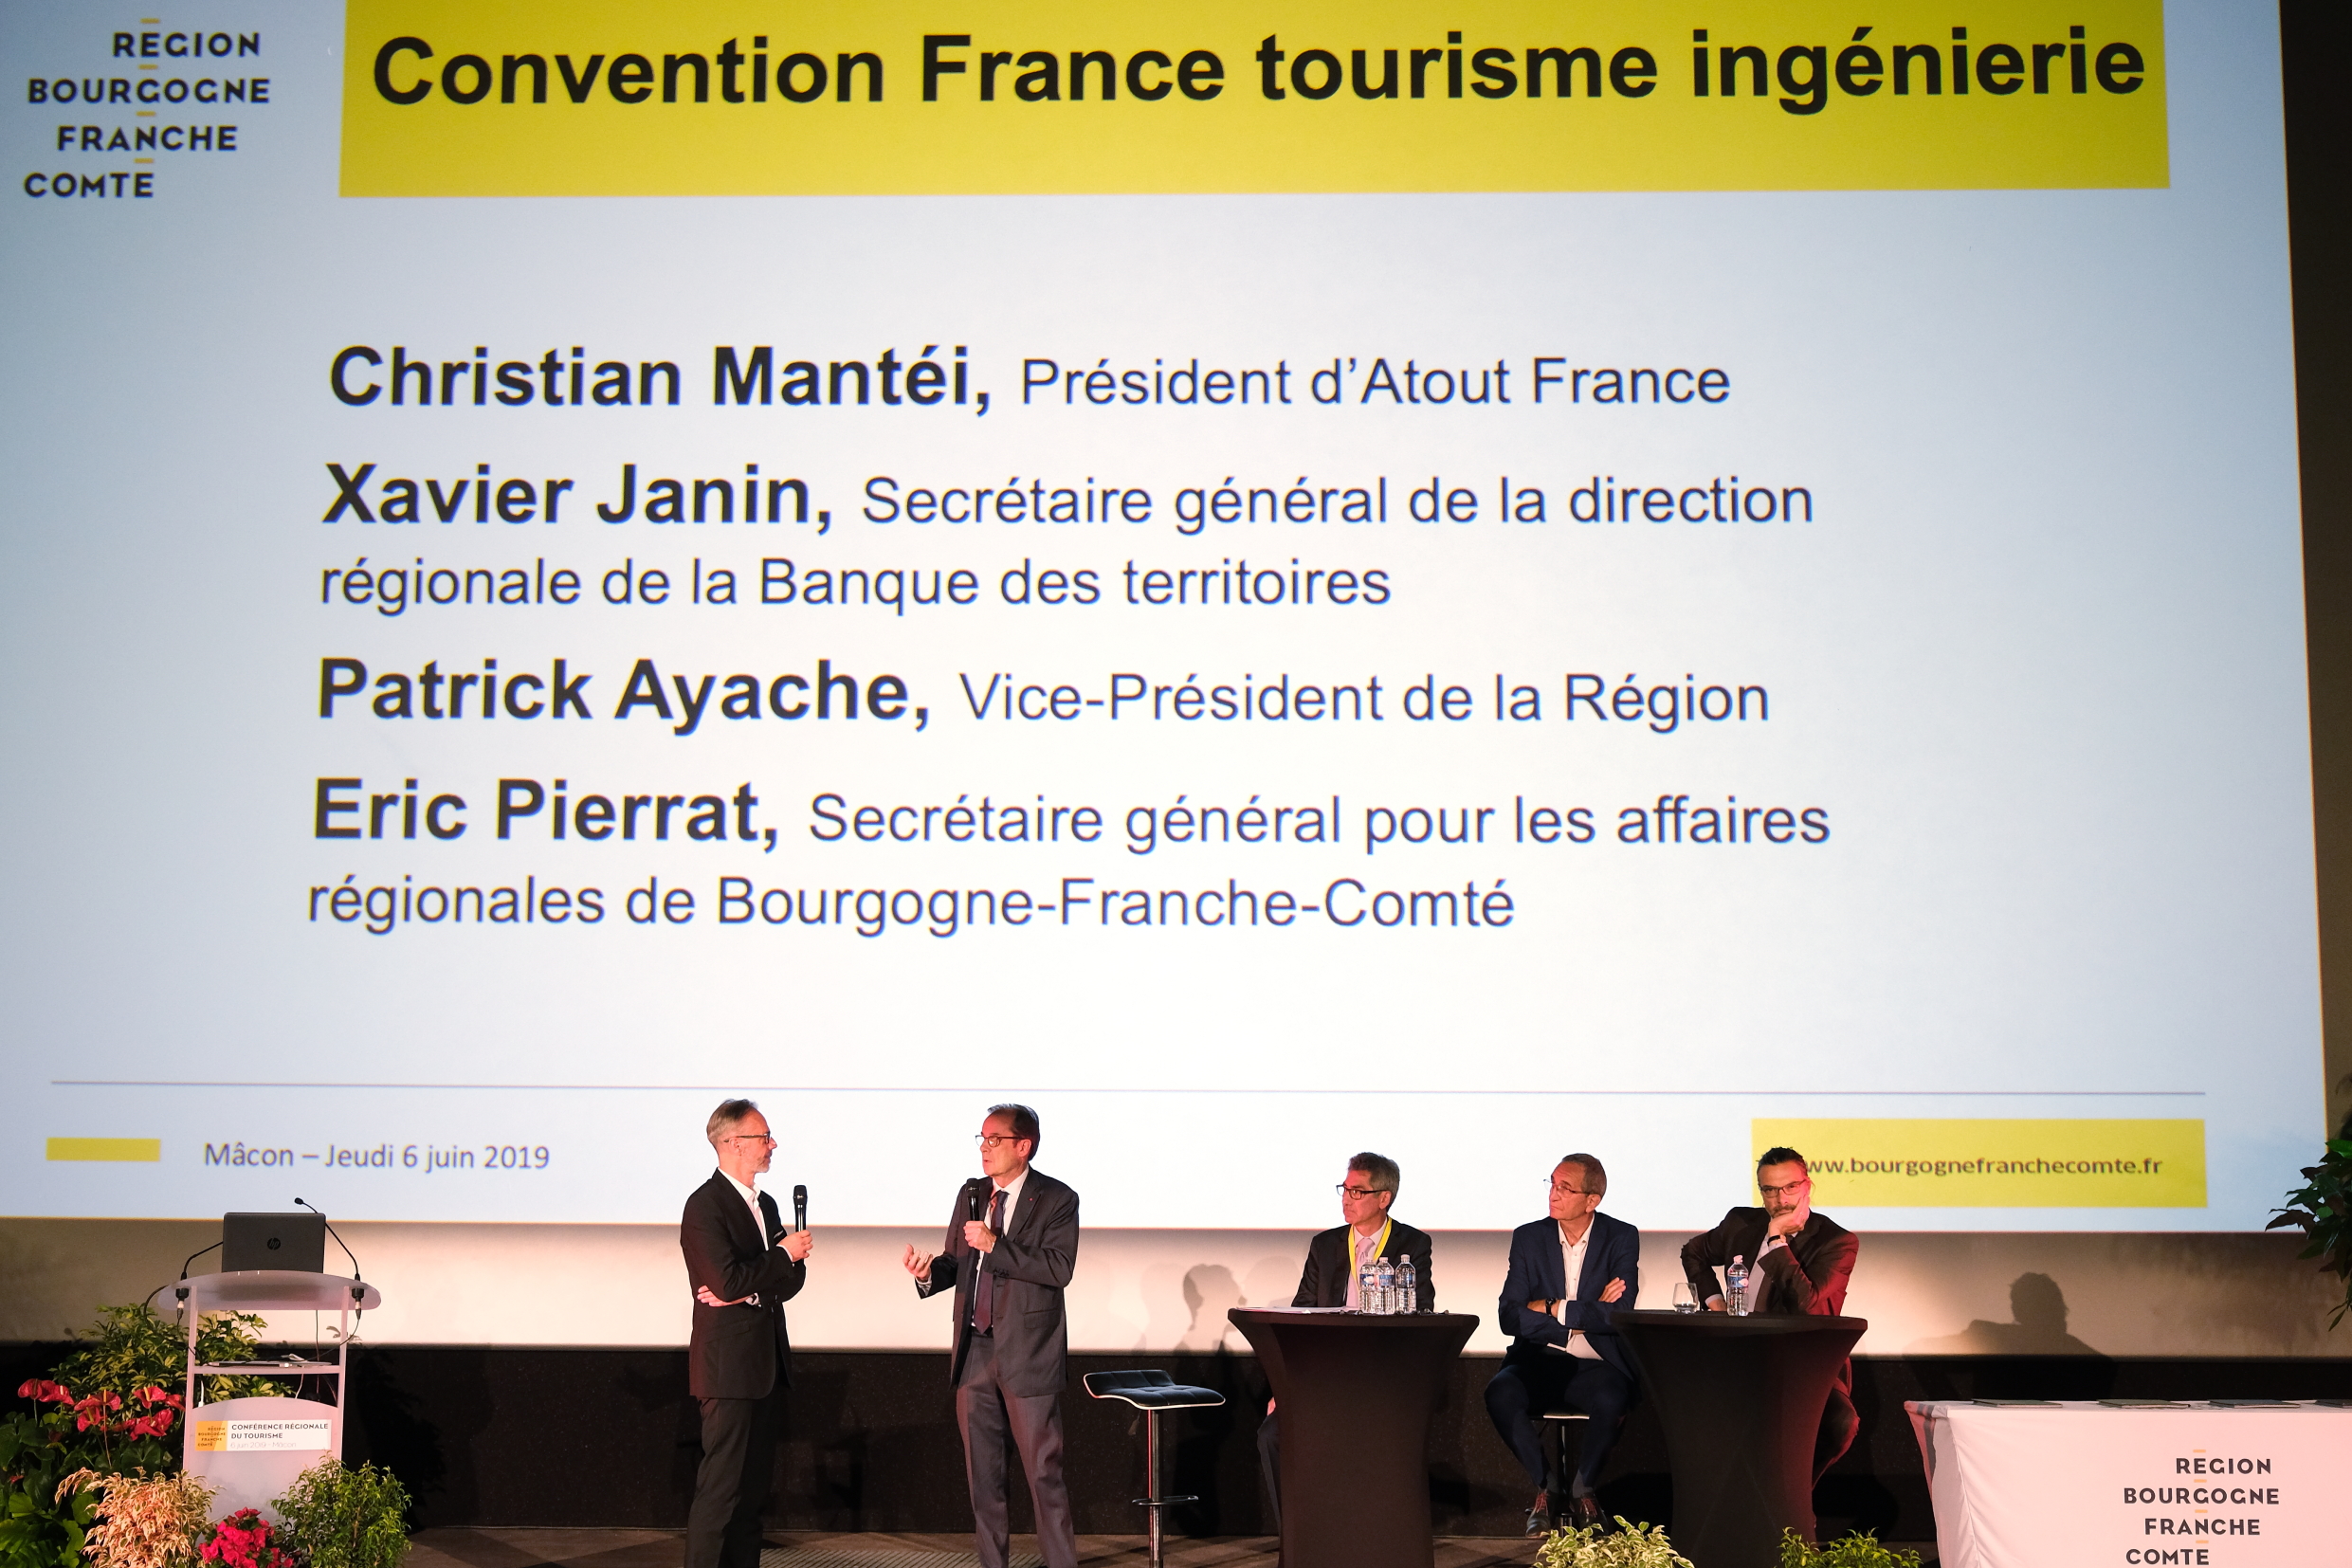 Conférence régionale du tourisme, jeudi 6 juin 2019 à Mâcon - Crédit photo Région Bourgogne-Franche-Comté